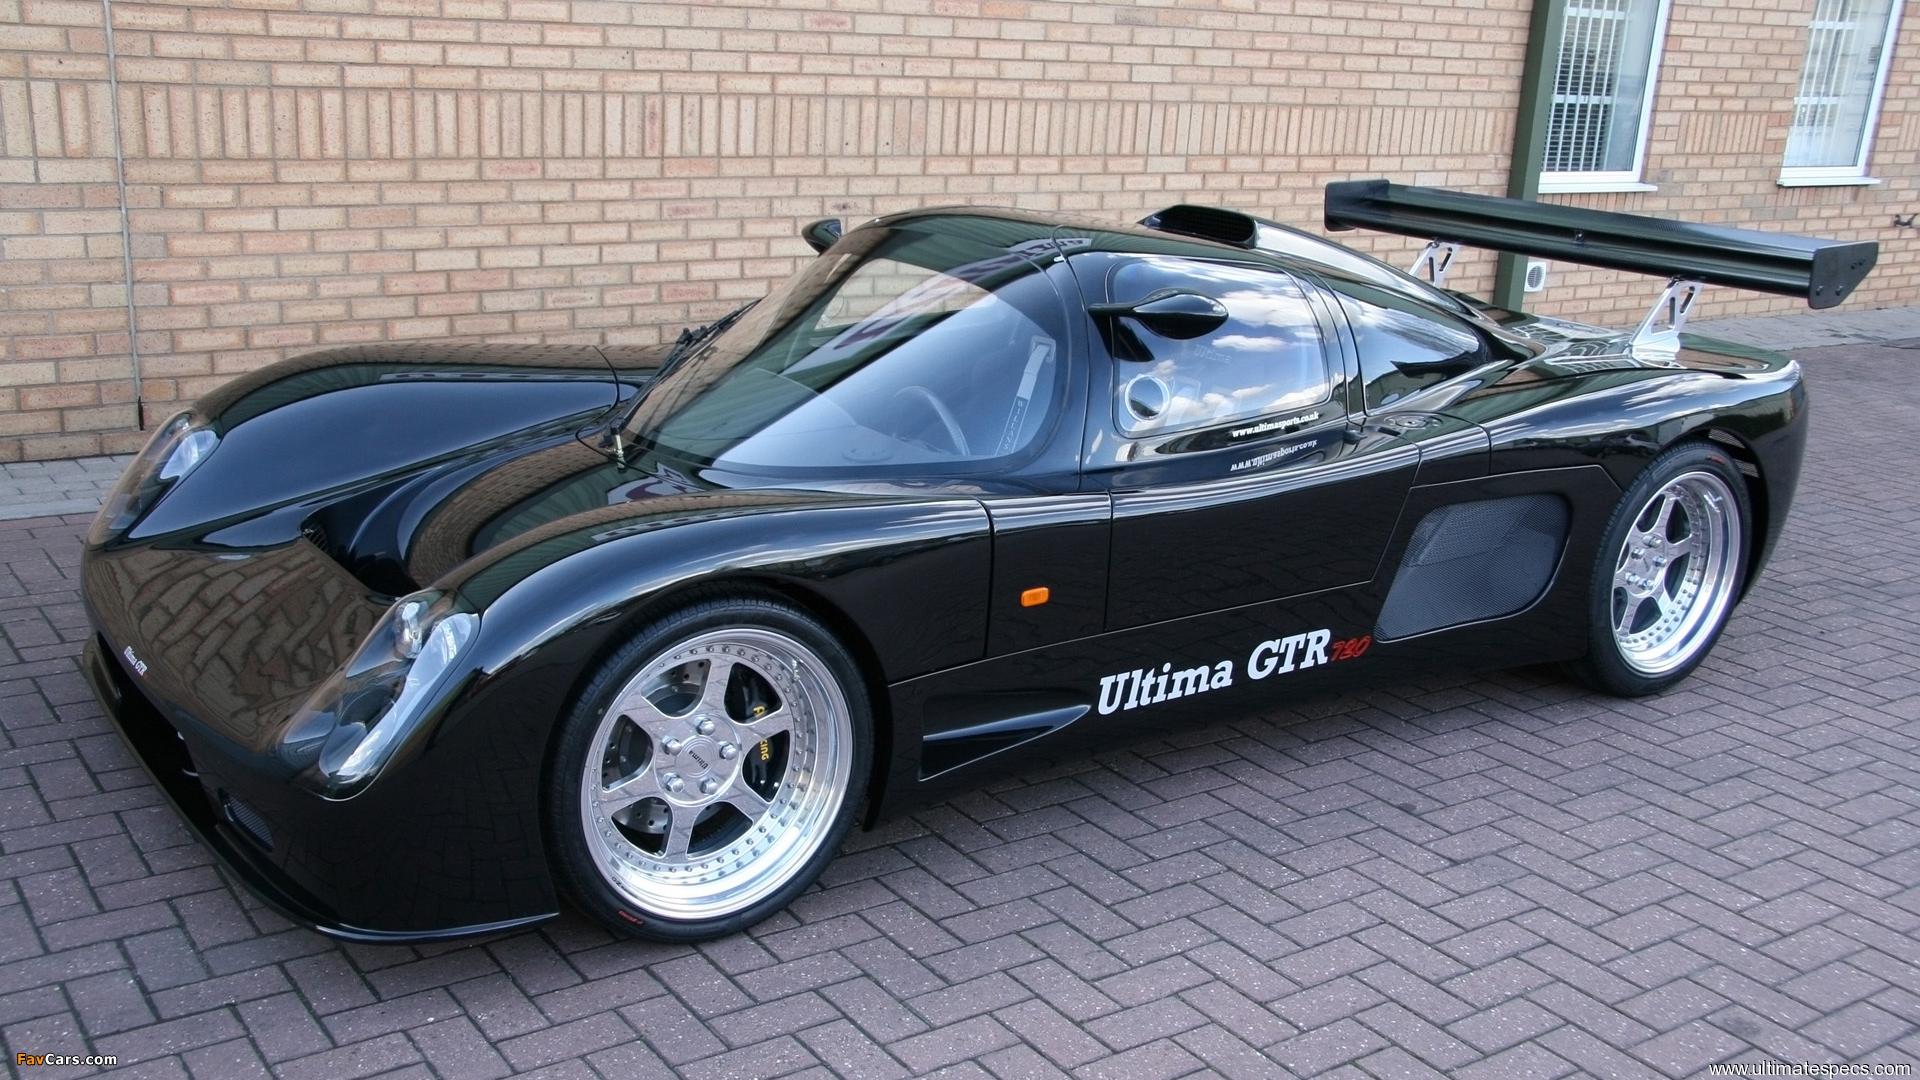 Ultima GTR